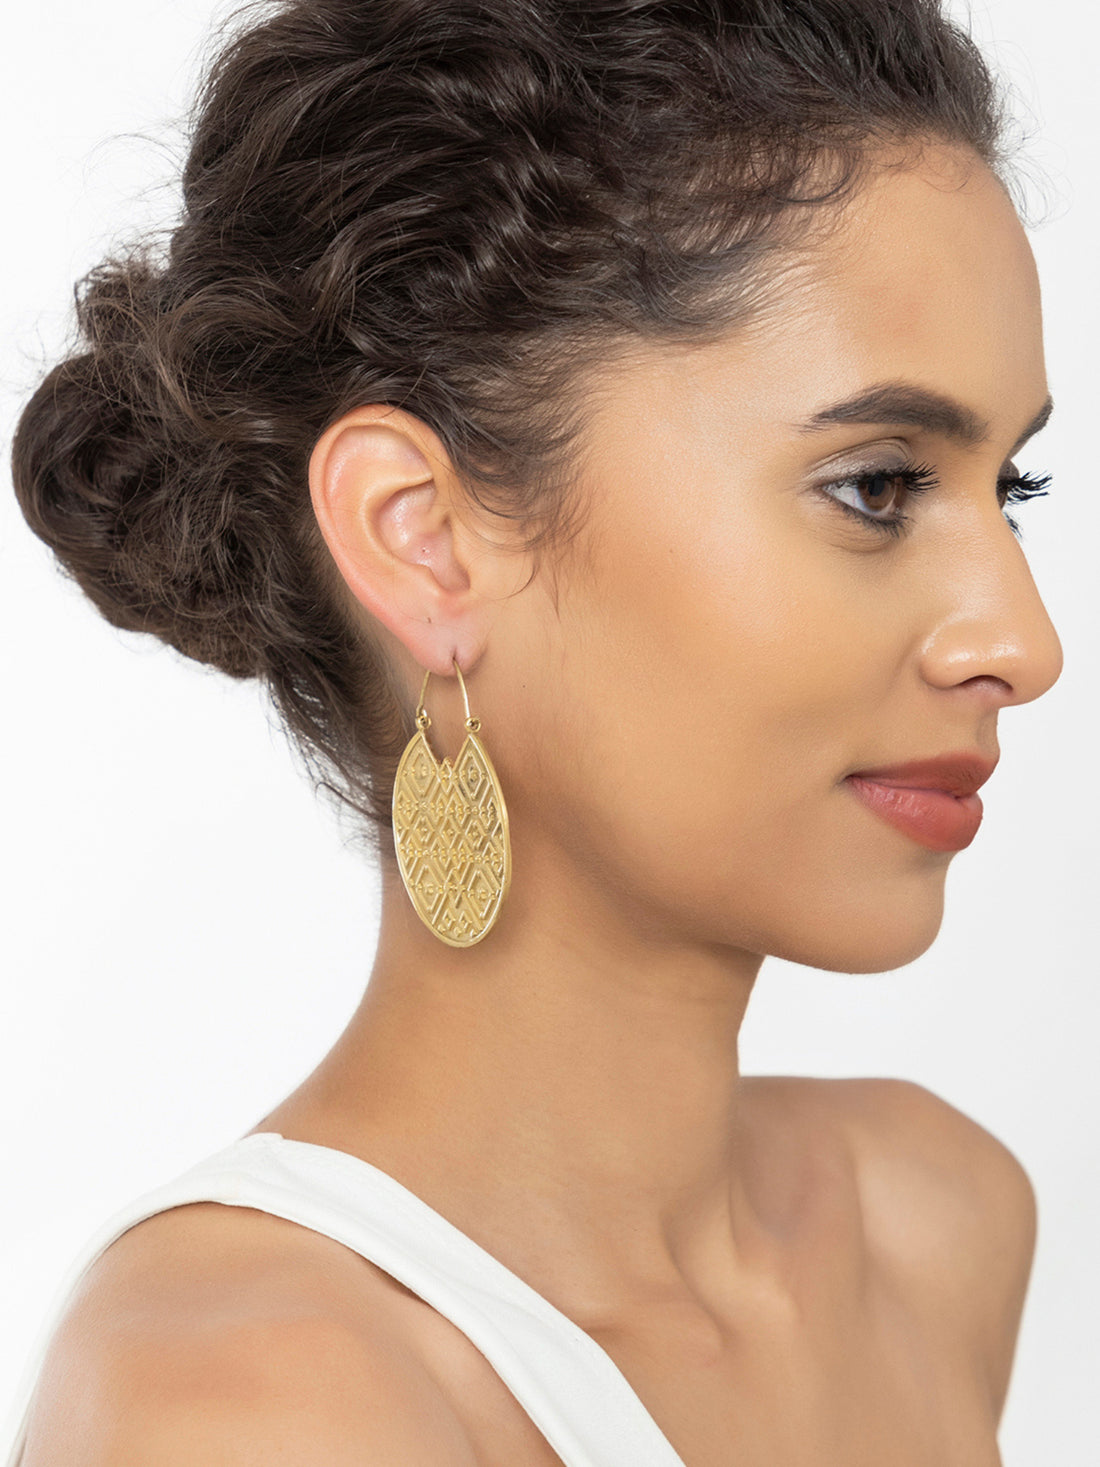 Festive Wear Hoops Earrings - Western Gold and Silver-Plated Brass Earrings By Studio One Love